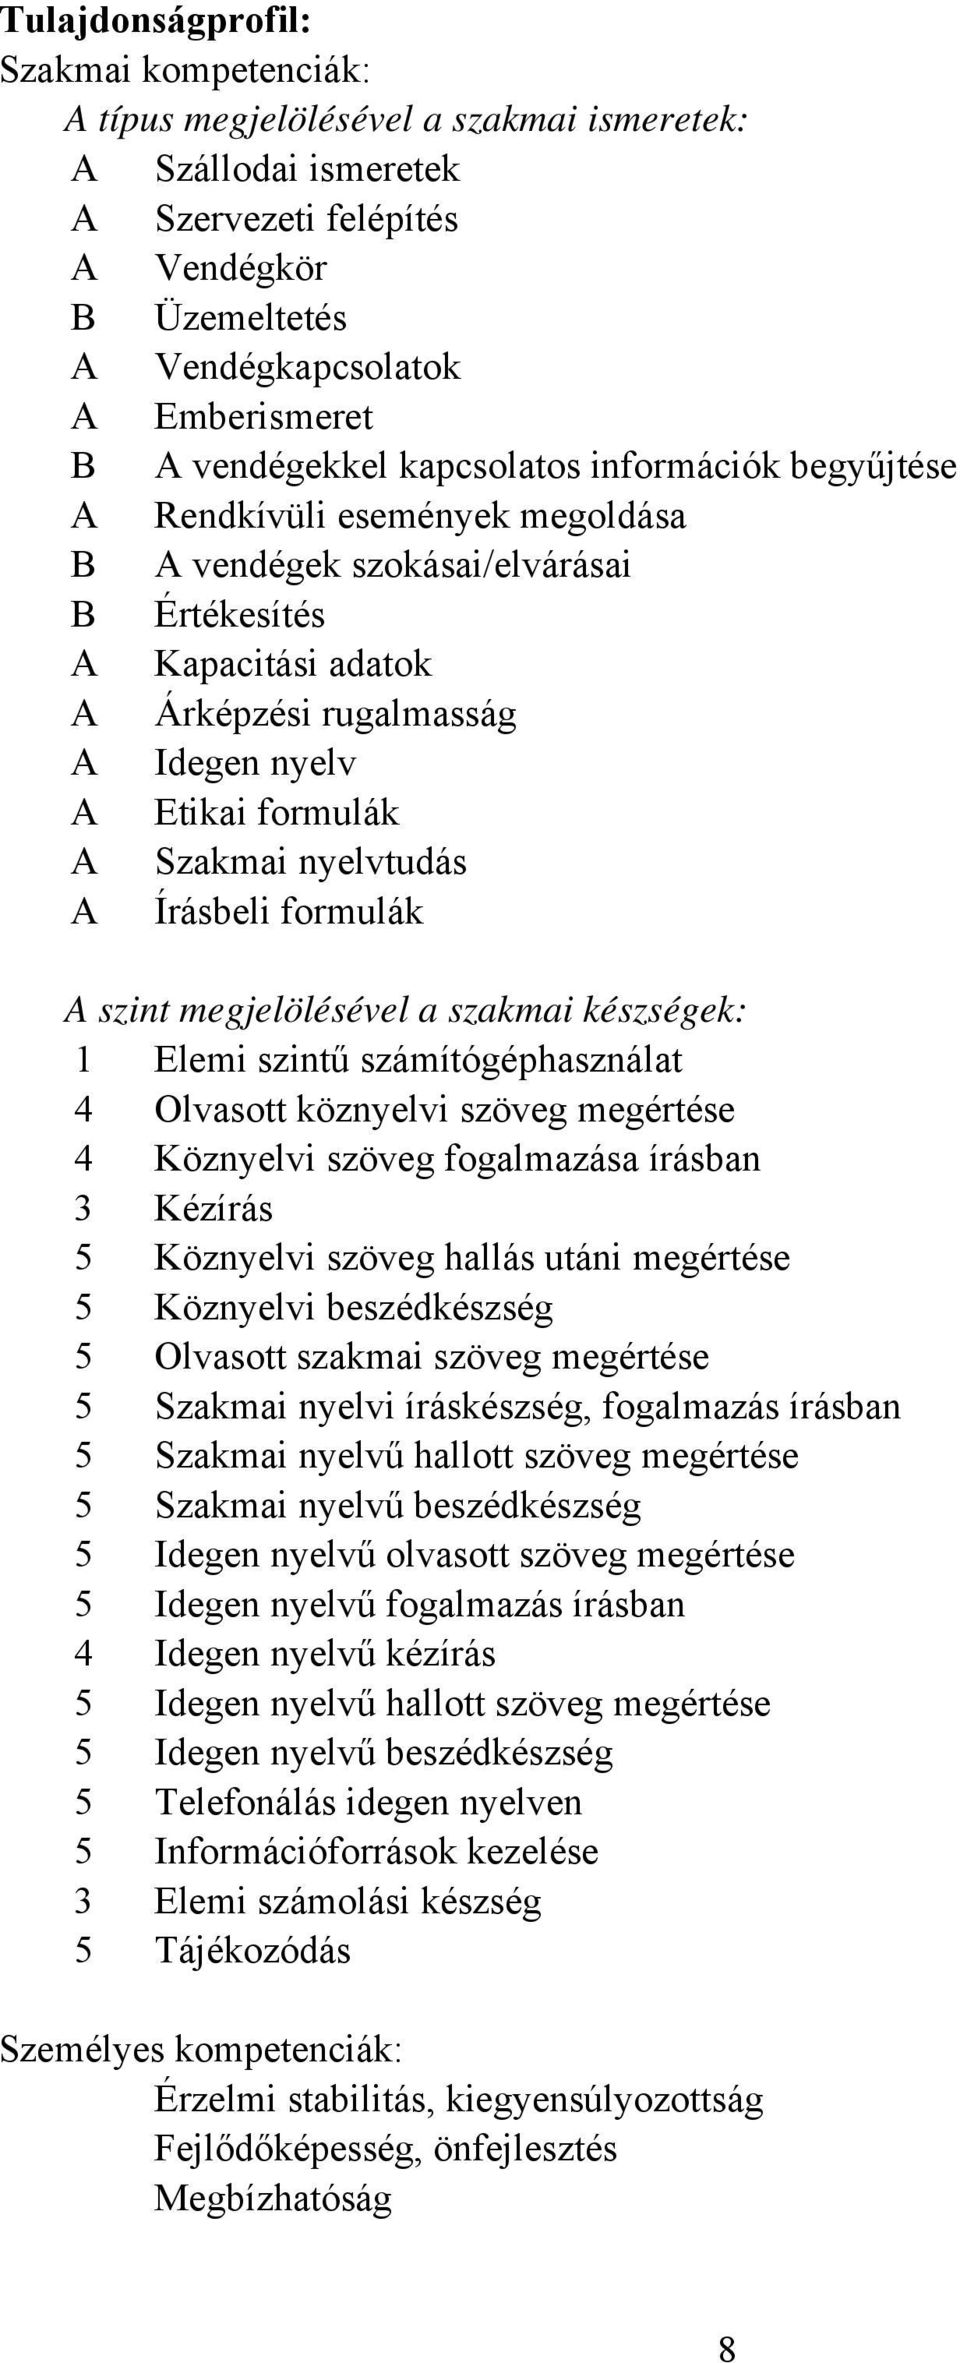 formulák A Szakmai nyelvtudás A Írásbeli formulák A szint megjelölésével a szakmai készségek: 1 Elemi szintű számítógéphasználat 4 Olvasott köznyelvi szöveg megértése 4 Köznyelvi szöveg fogalmazása